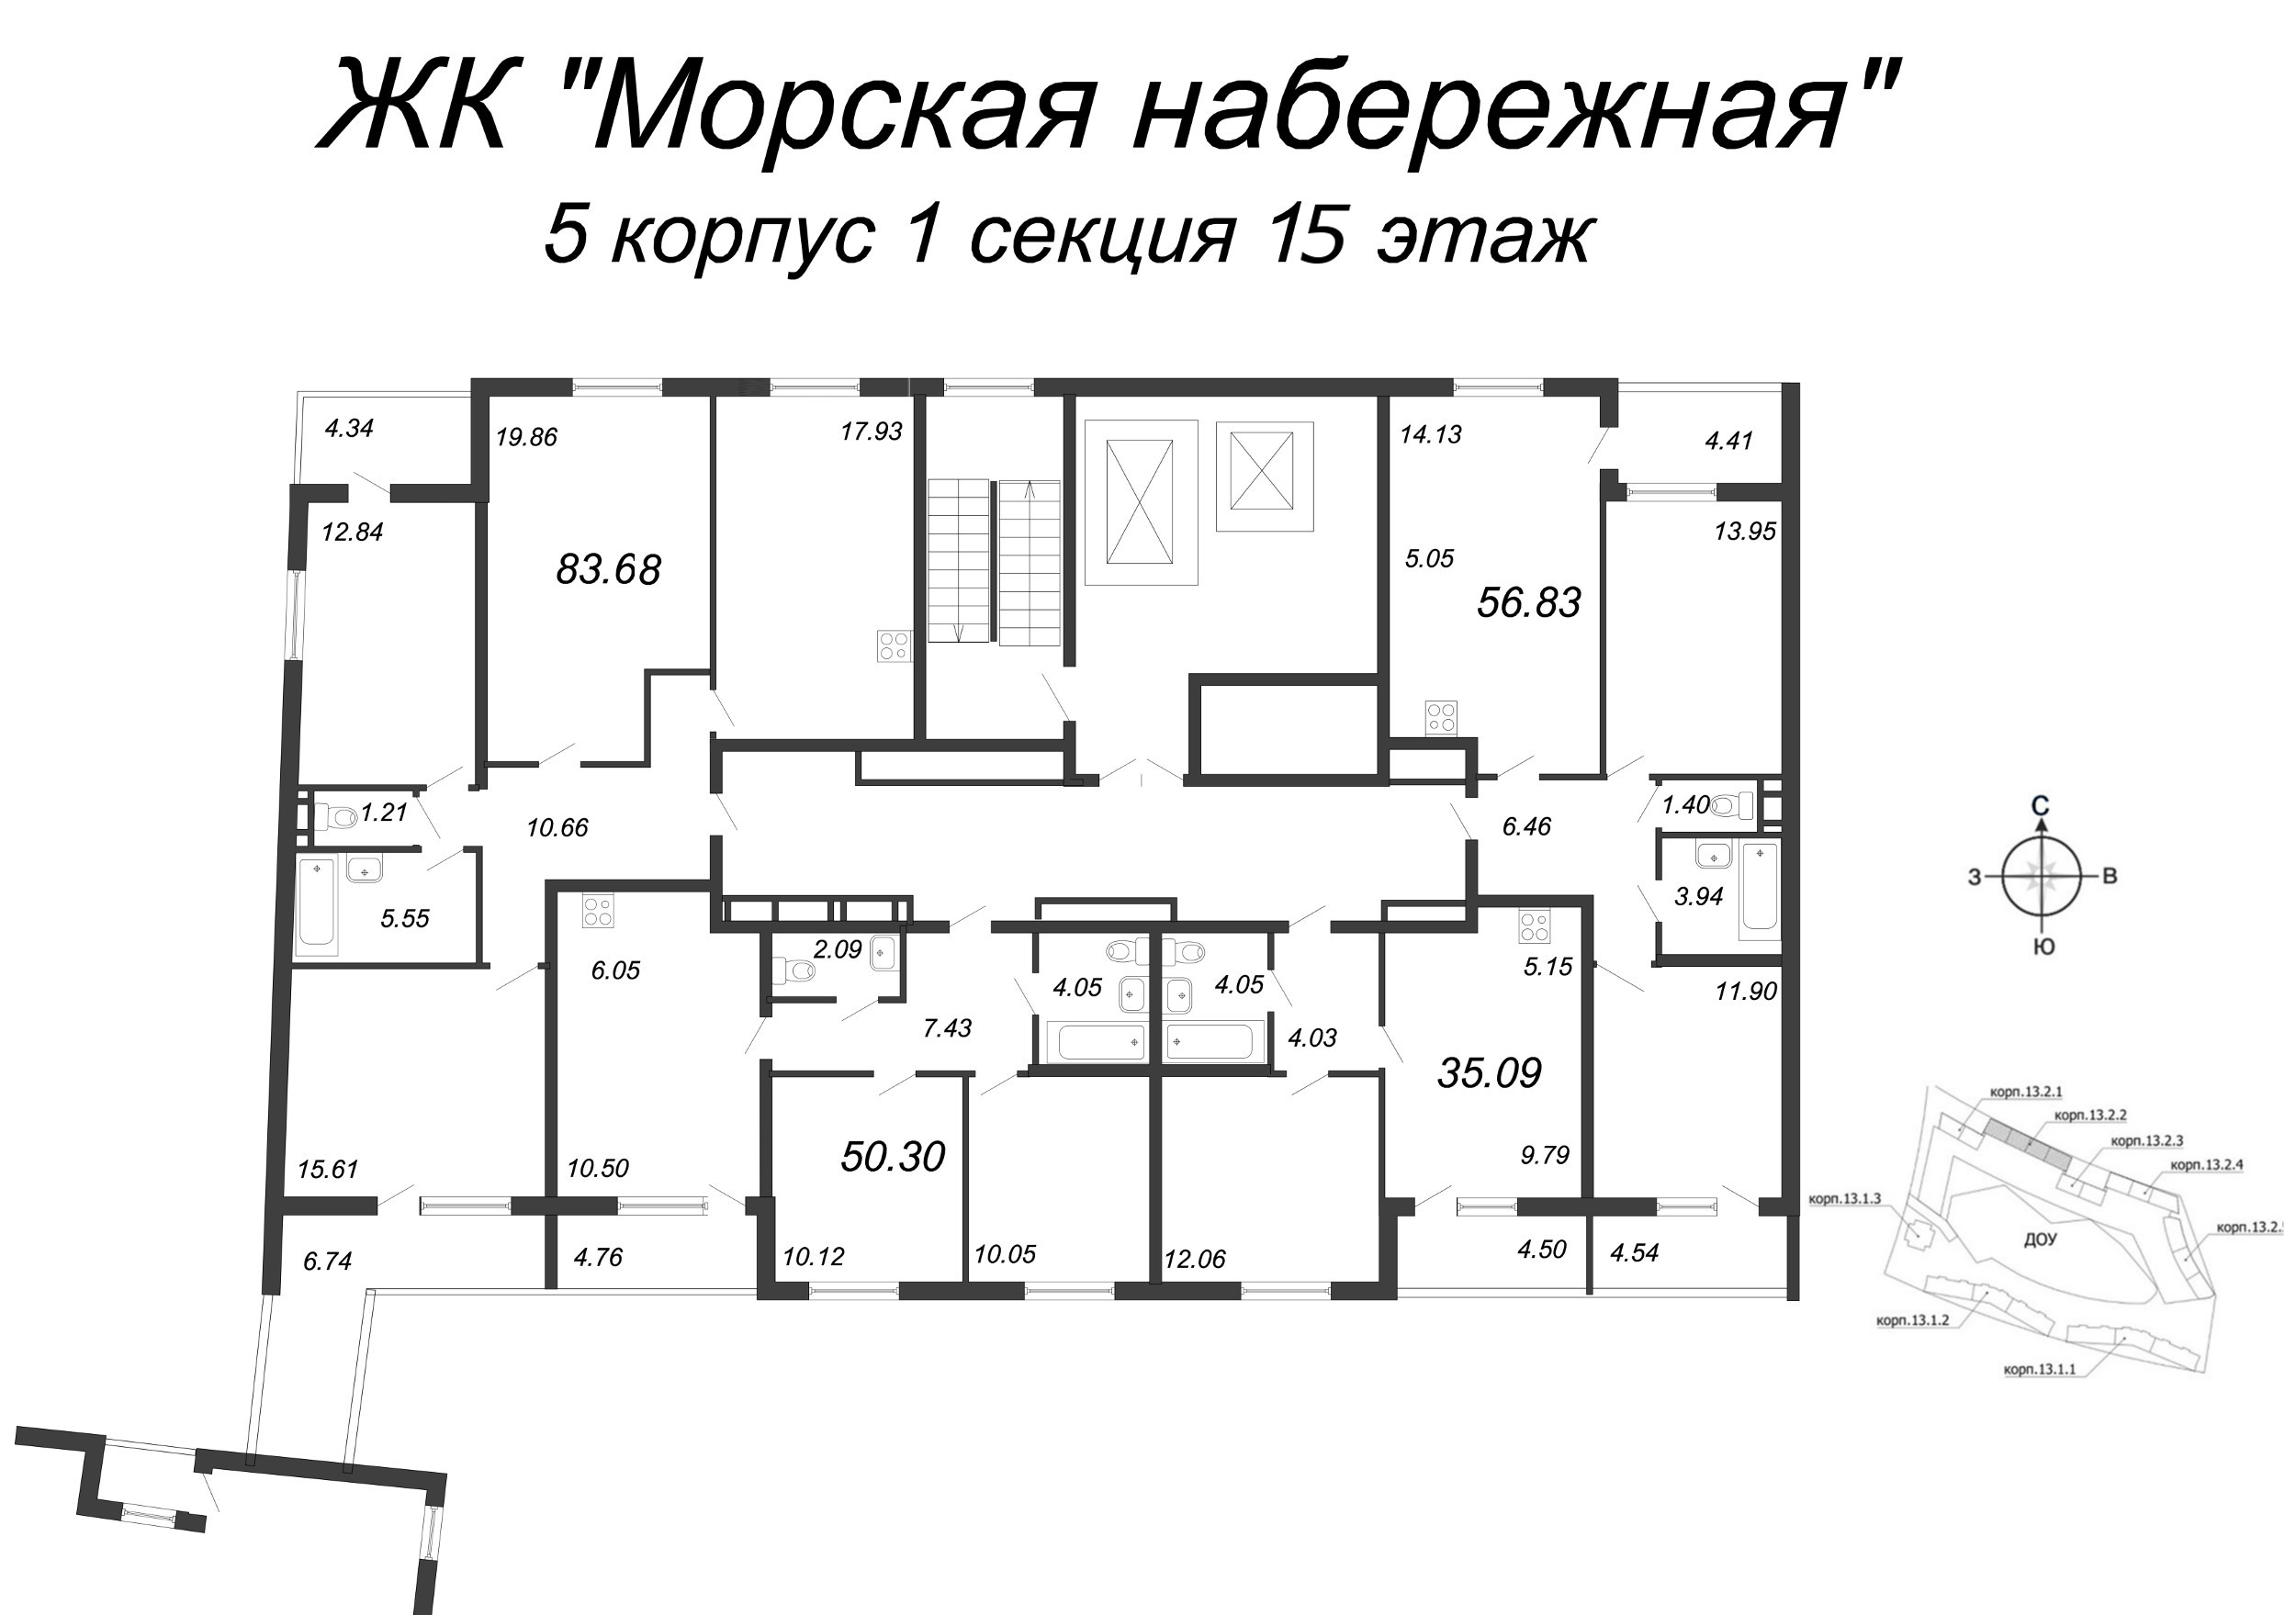 4-комнатная (Евро) квартира, 91 м² в ЖК "Морская набережная" - планировка этажа